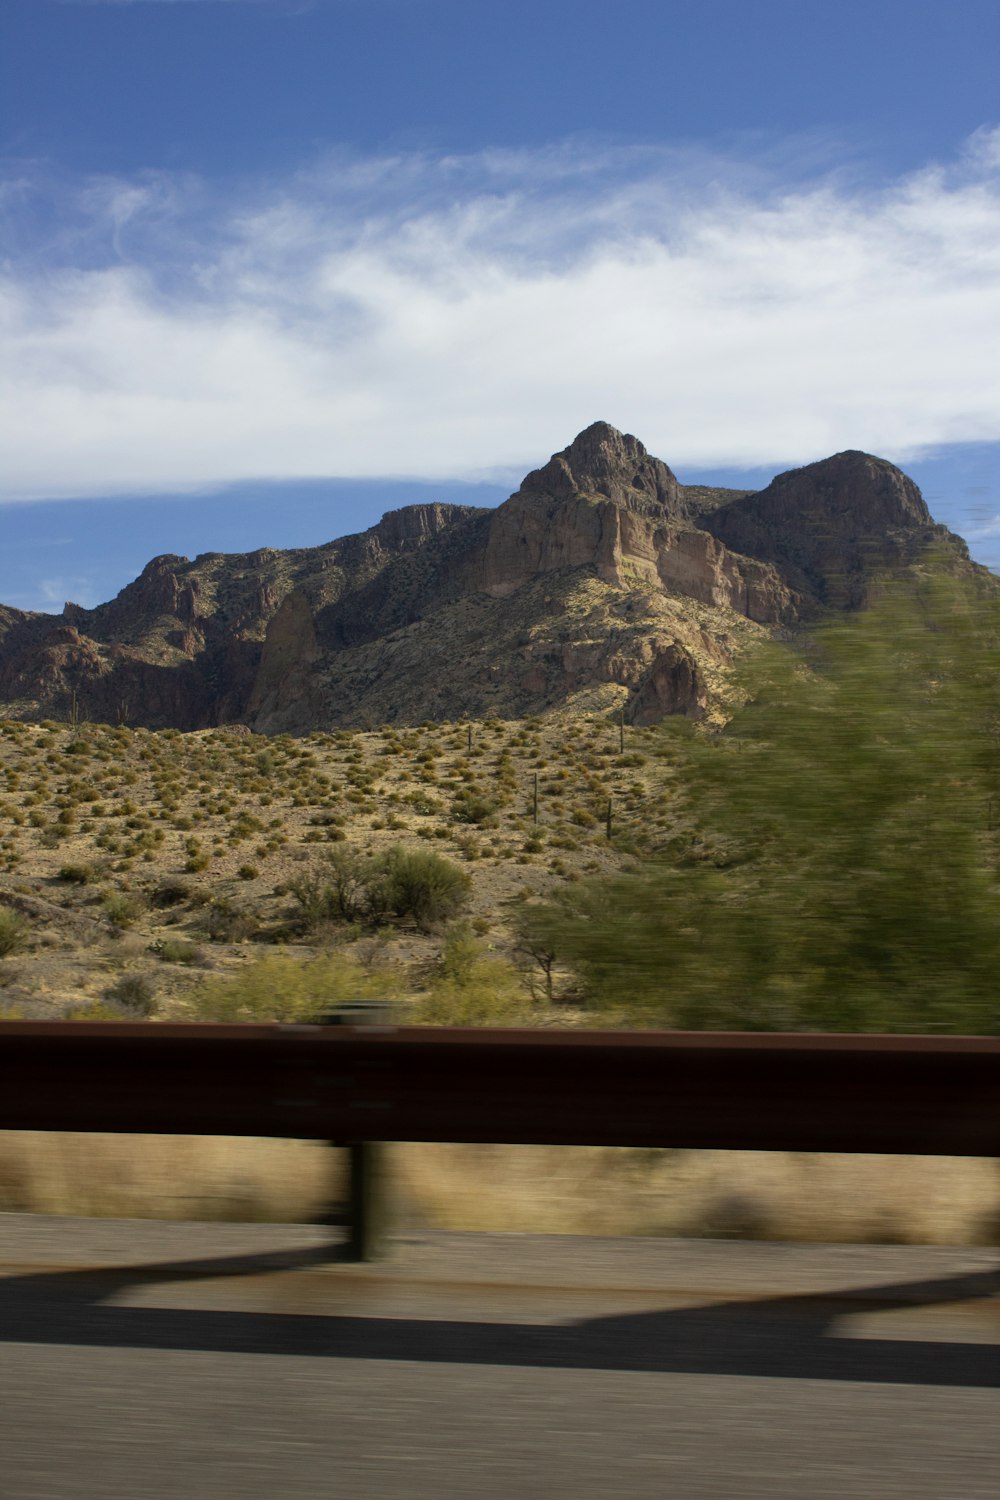 Una vista de una montaña desde un coche en movimiento